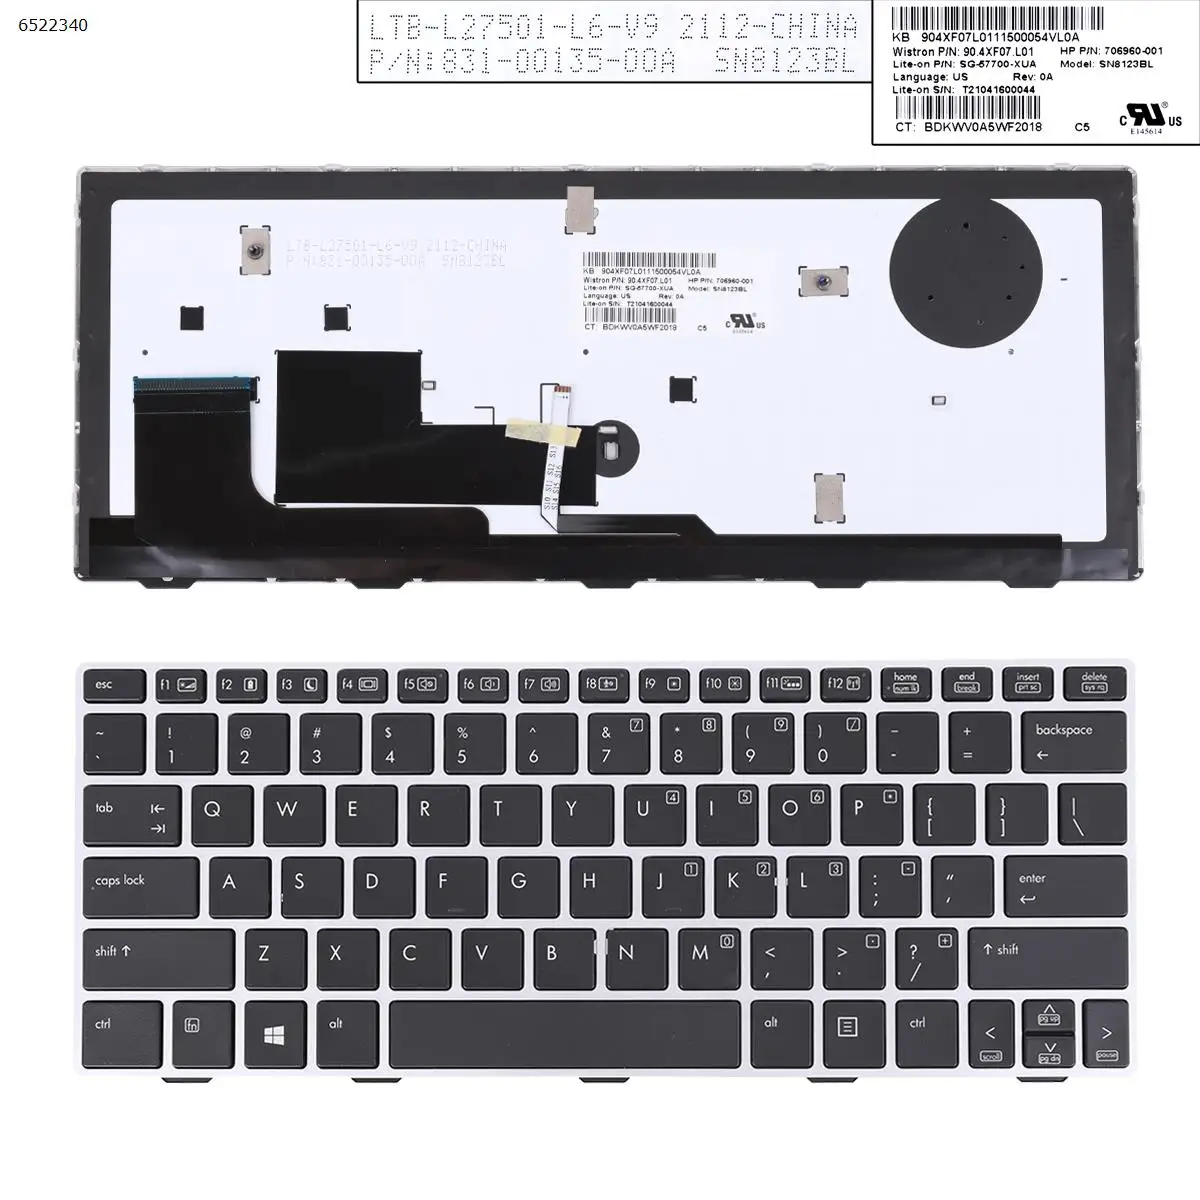 

US Laptop Keyboard for HP EliteBook 820 G1 820 G2 720 G1 720 G2 725 G2 SILVER FRAME BLACK Backlit with point